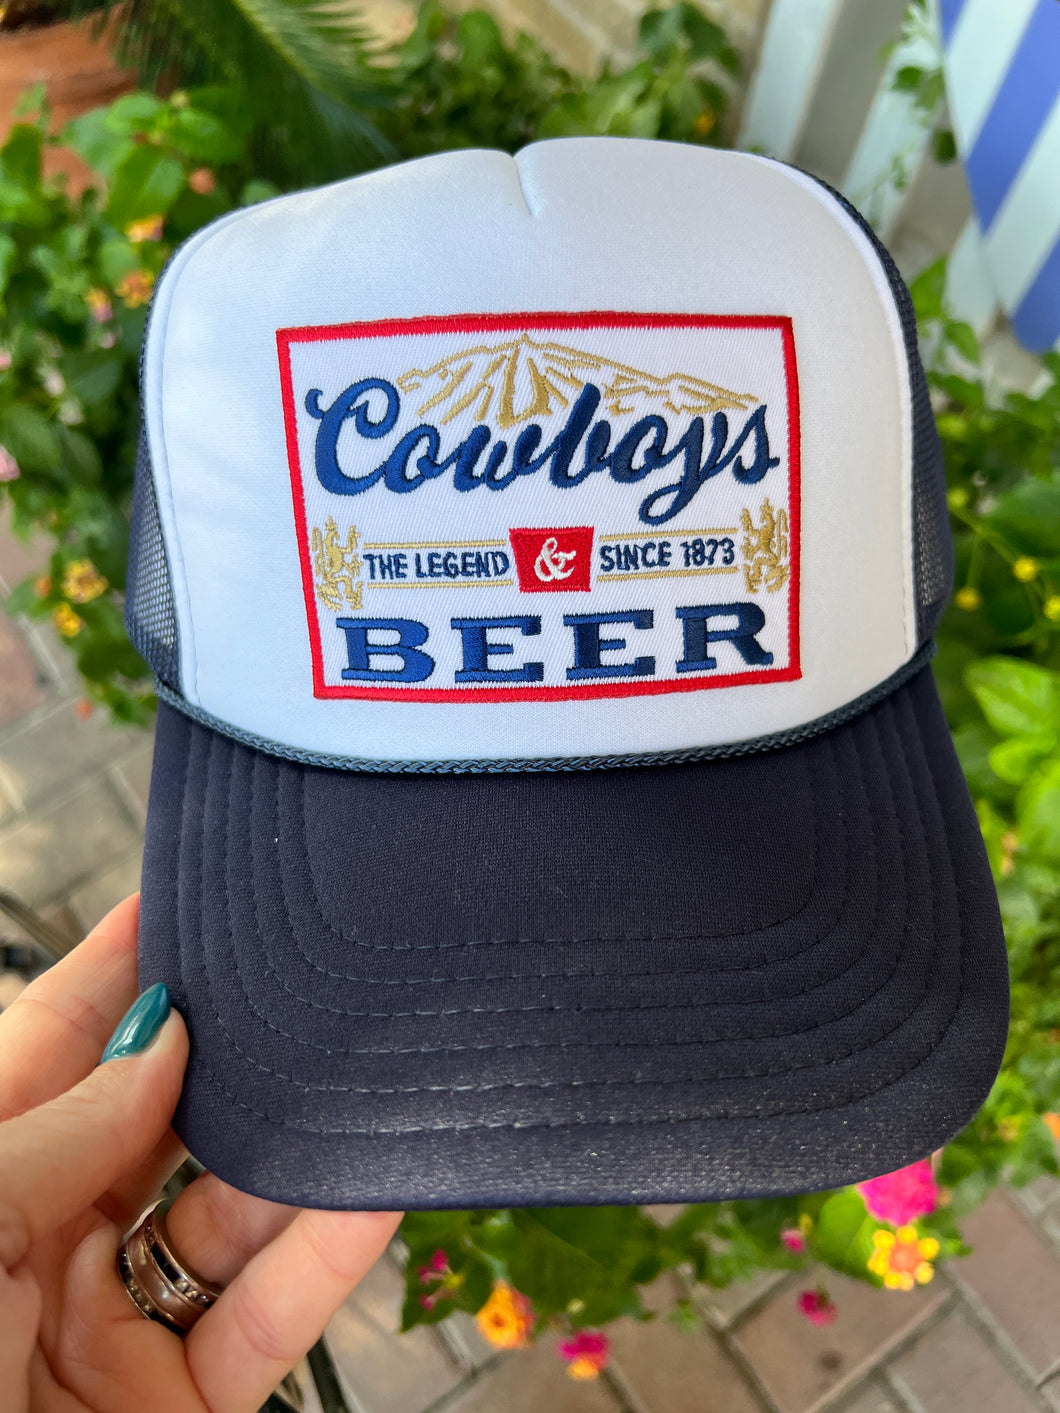 Let’s Go Cowboys!